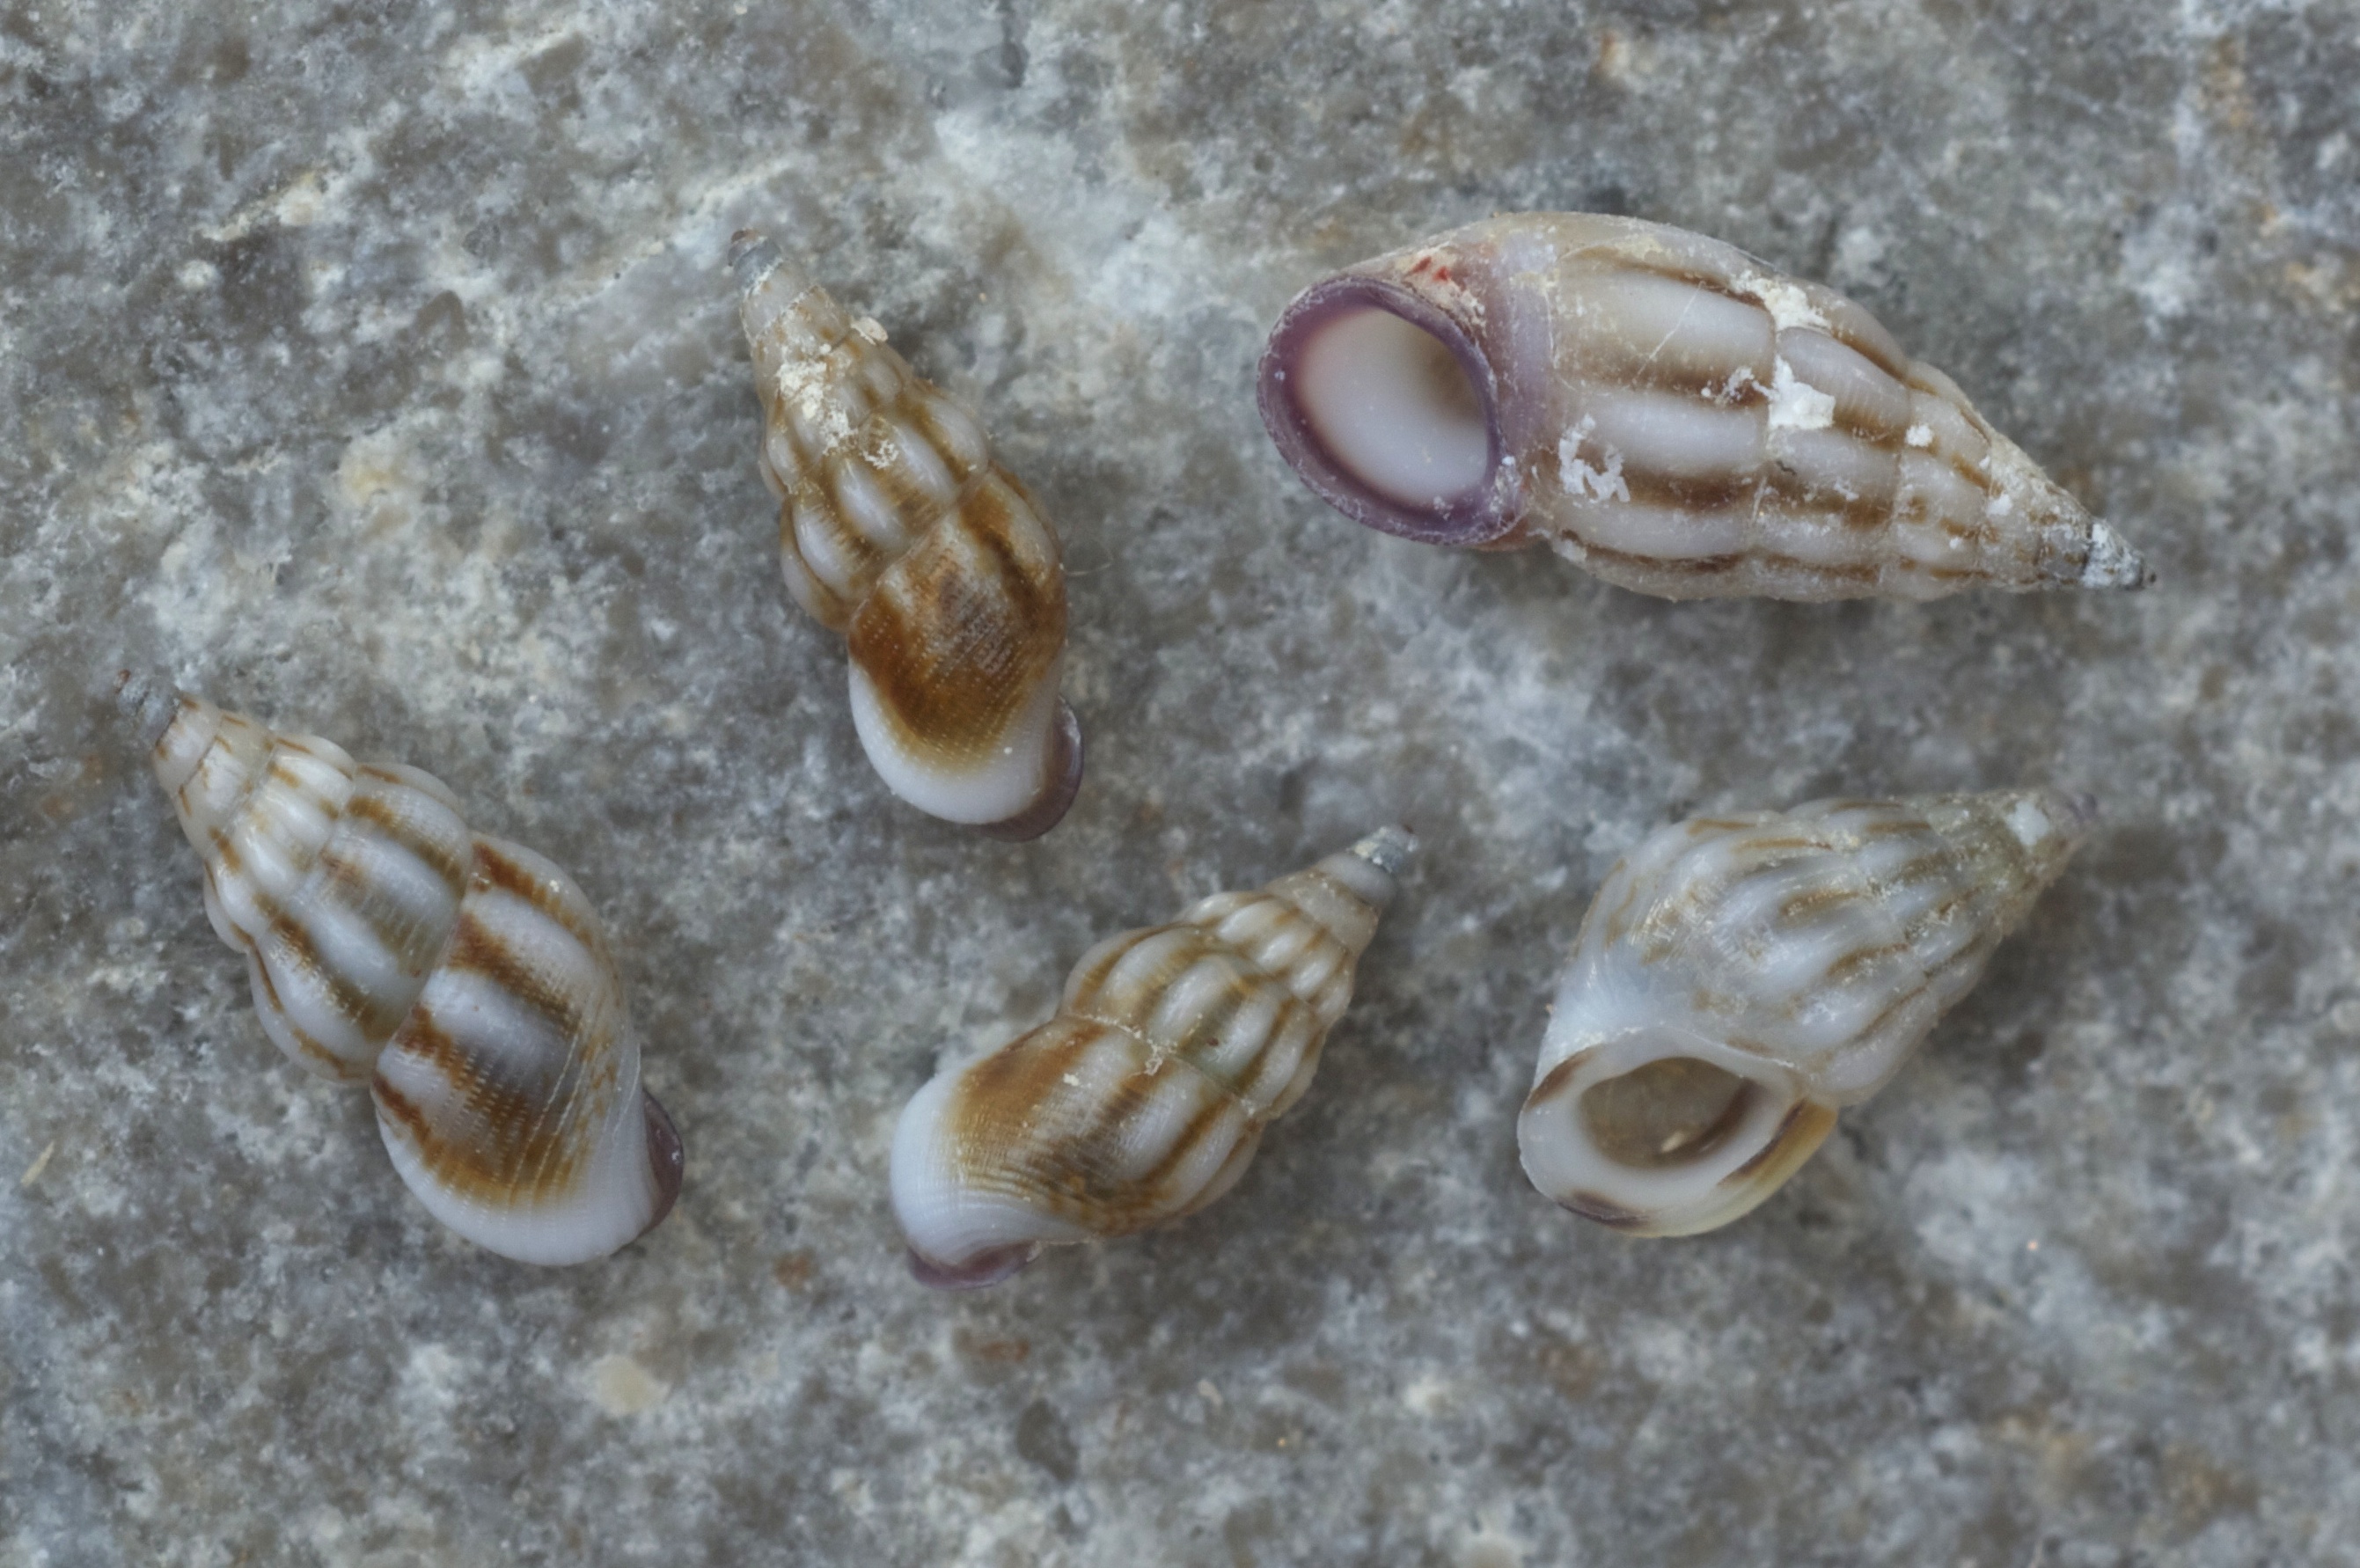 Rissoa guerinii & Pusillina radiata (bottom right)